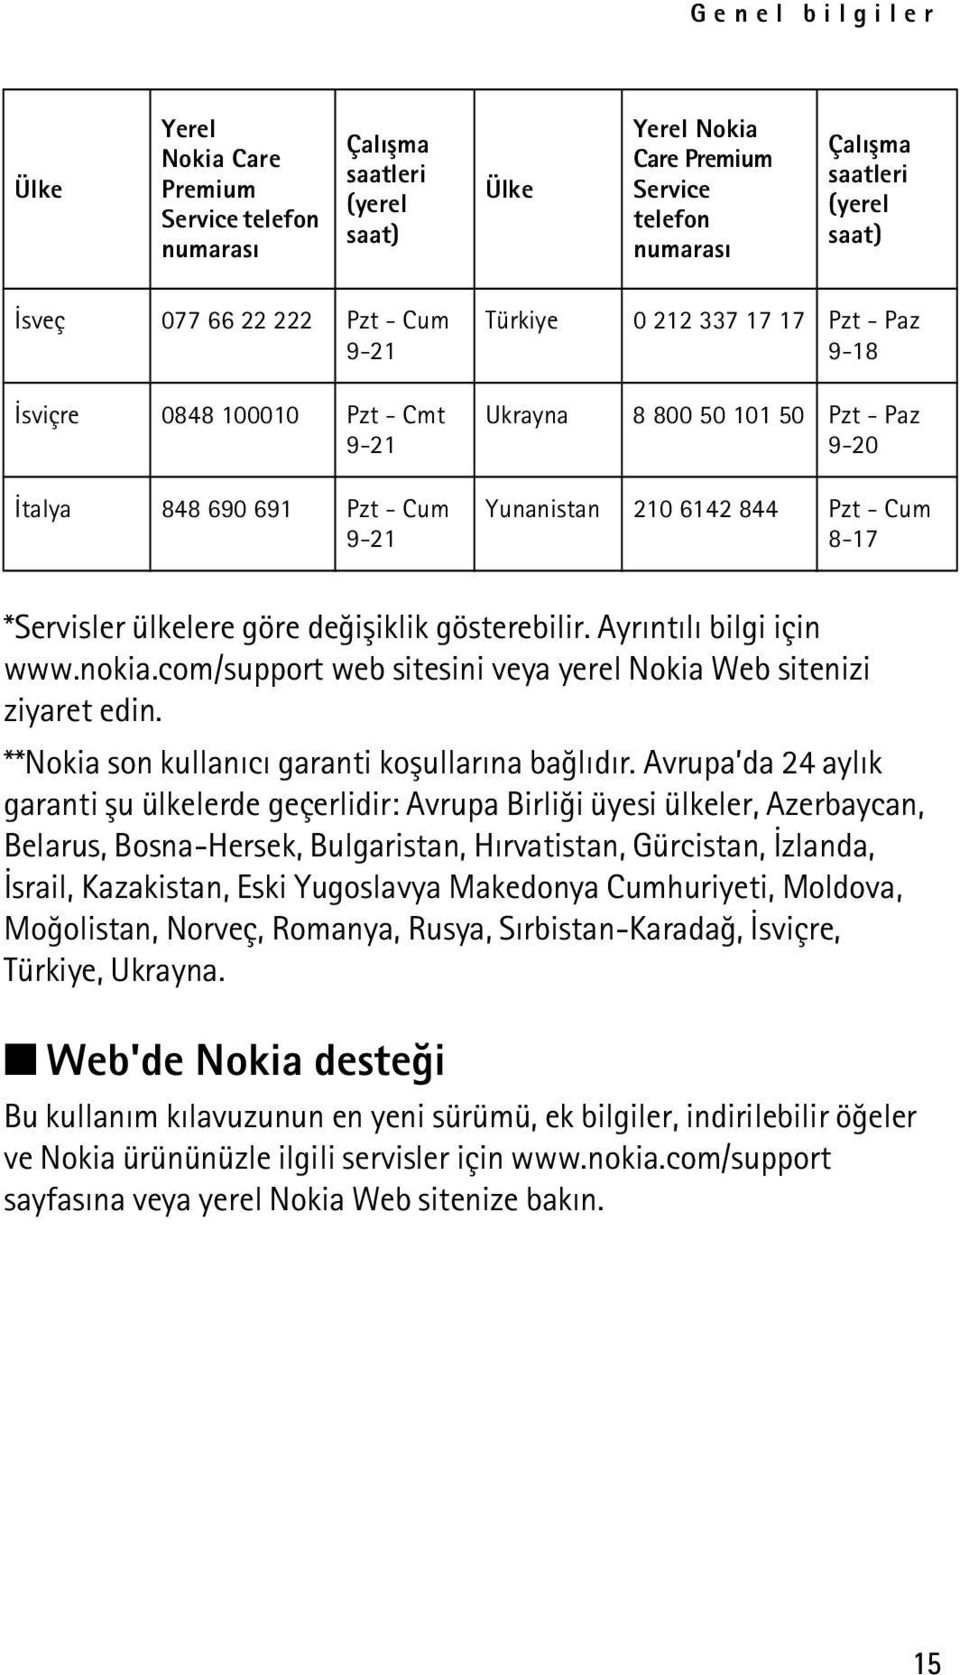 Cum 8-17 *Servisler ülkelere göre deðiþiklik gösterebilir. Ayrýntýlý bilgi için www.nokia.com/support web sitesini veya yerel Nokia Web sitenizi ziyaret edin.